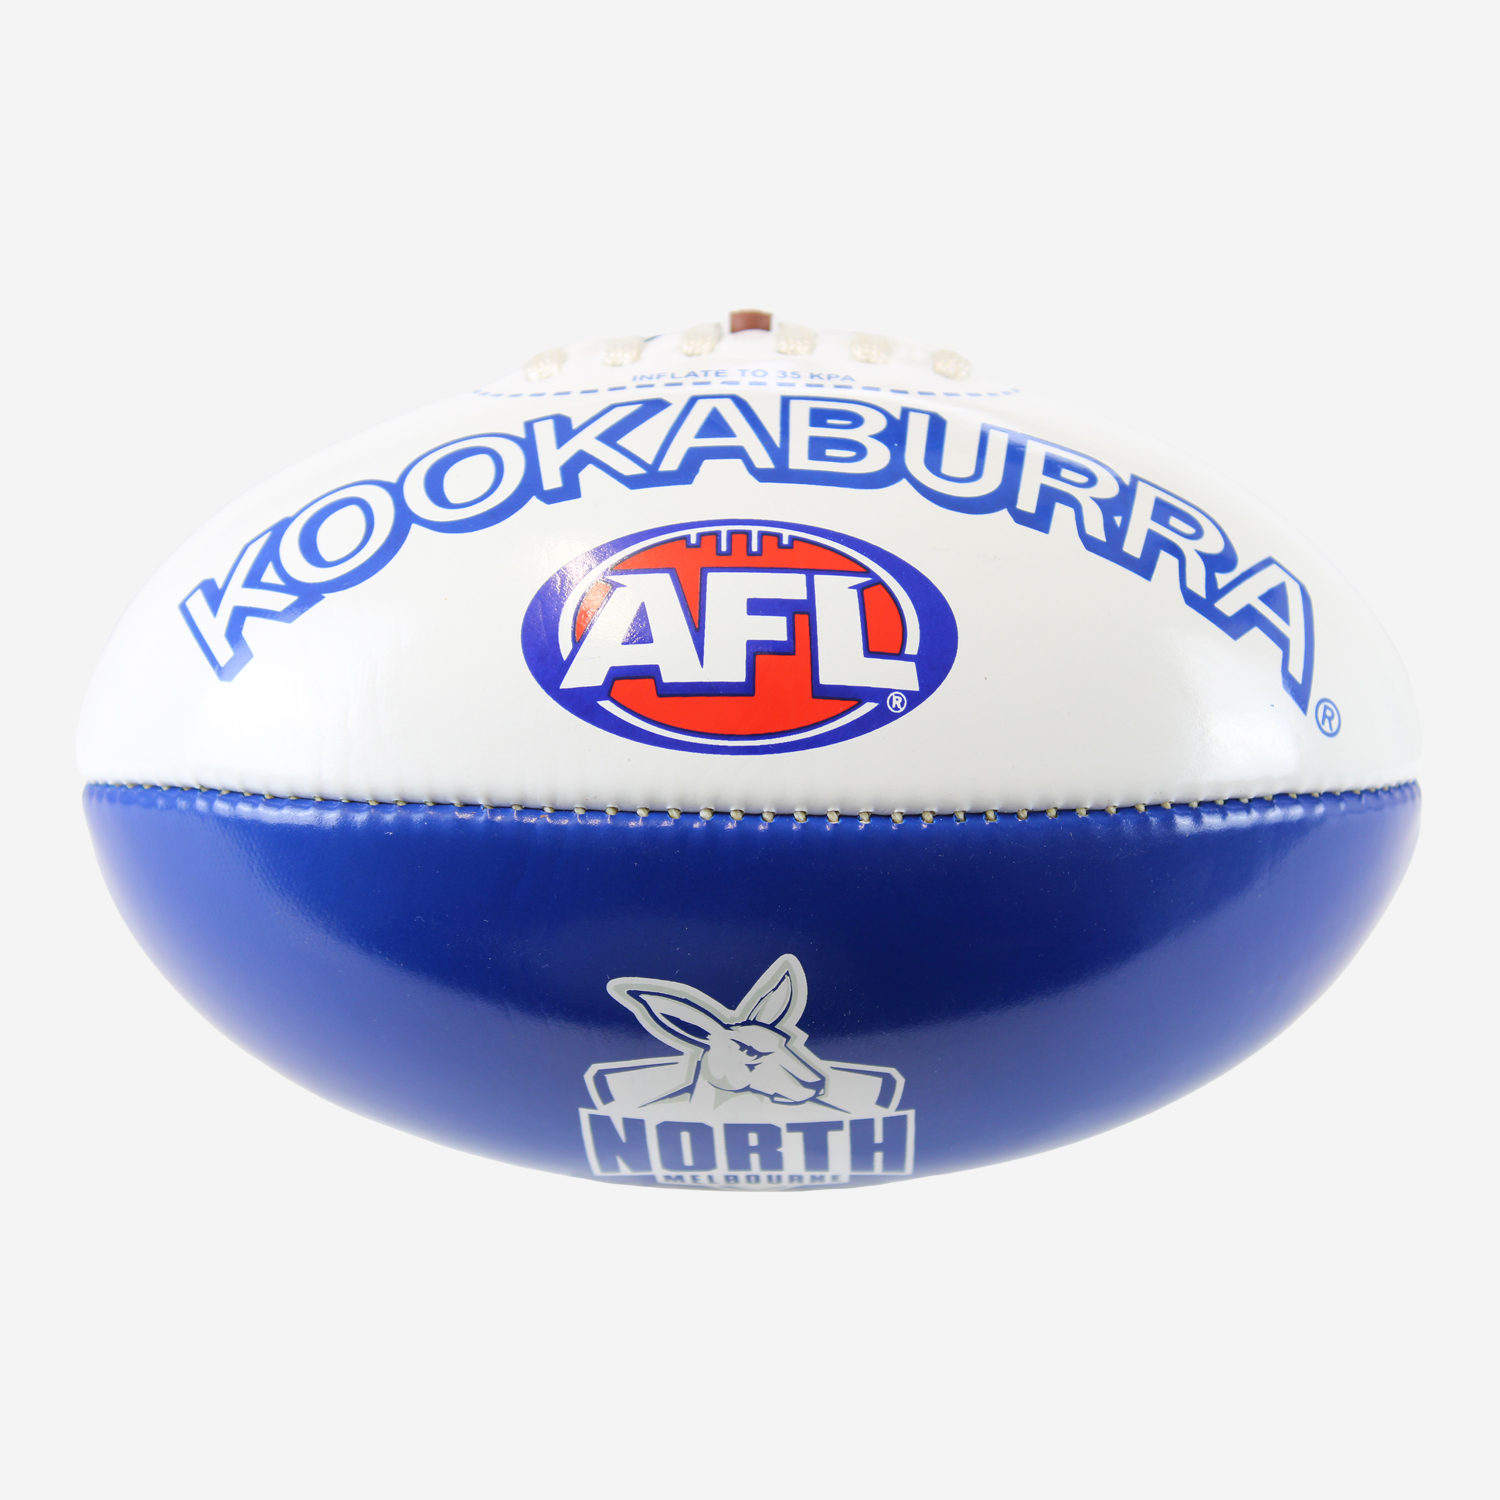 Kookaburra AFL Mini PVC Football 20CM North Melbourne Kangaroos